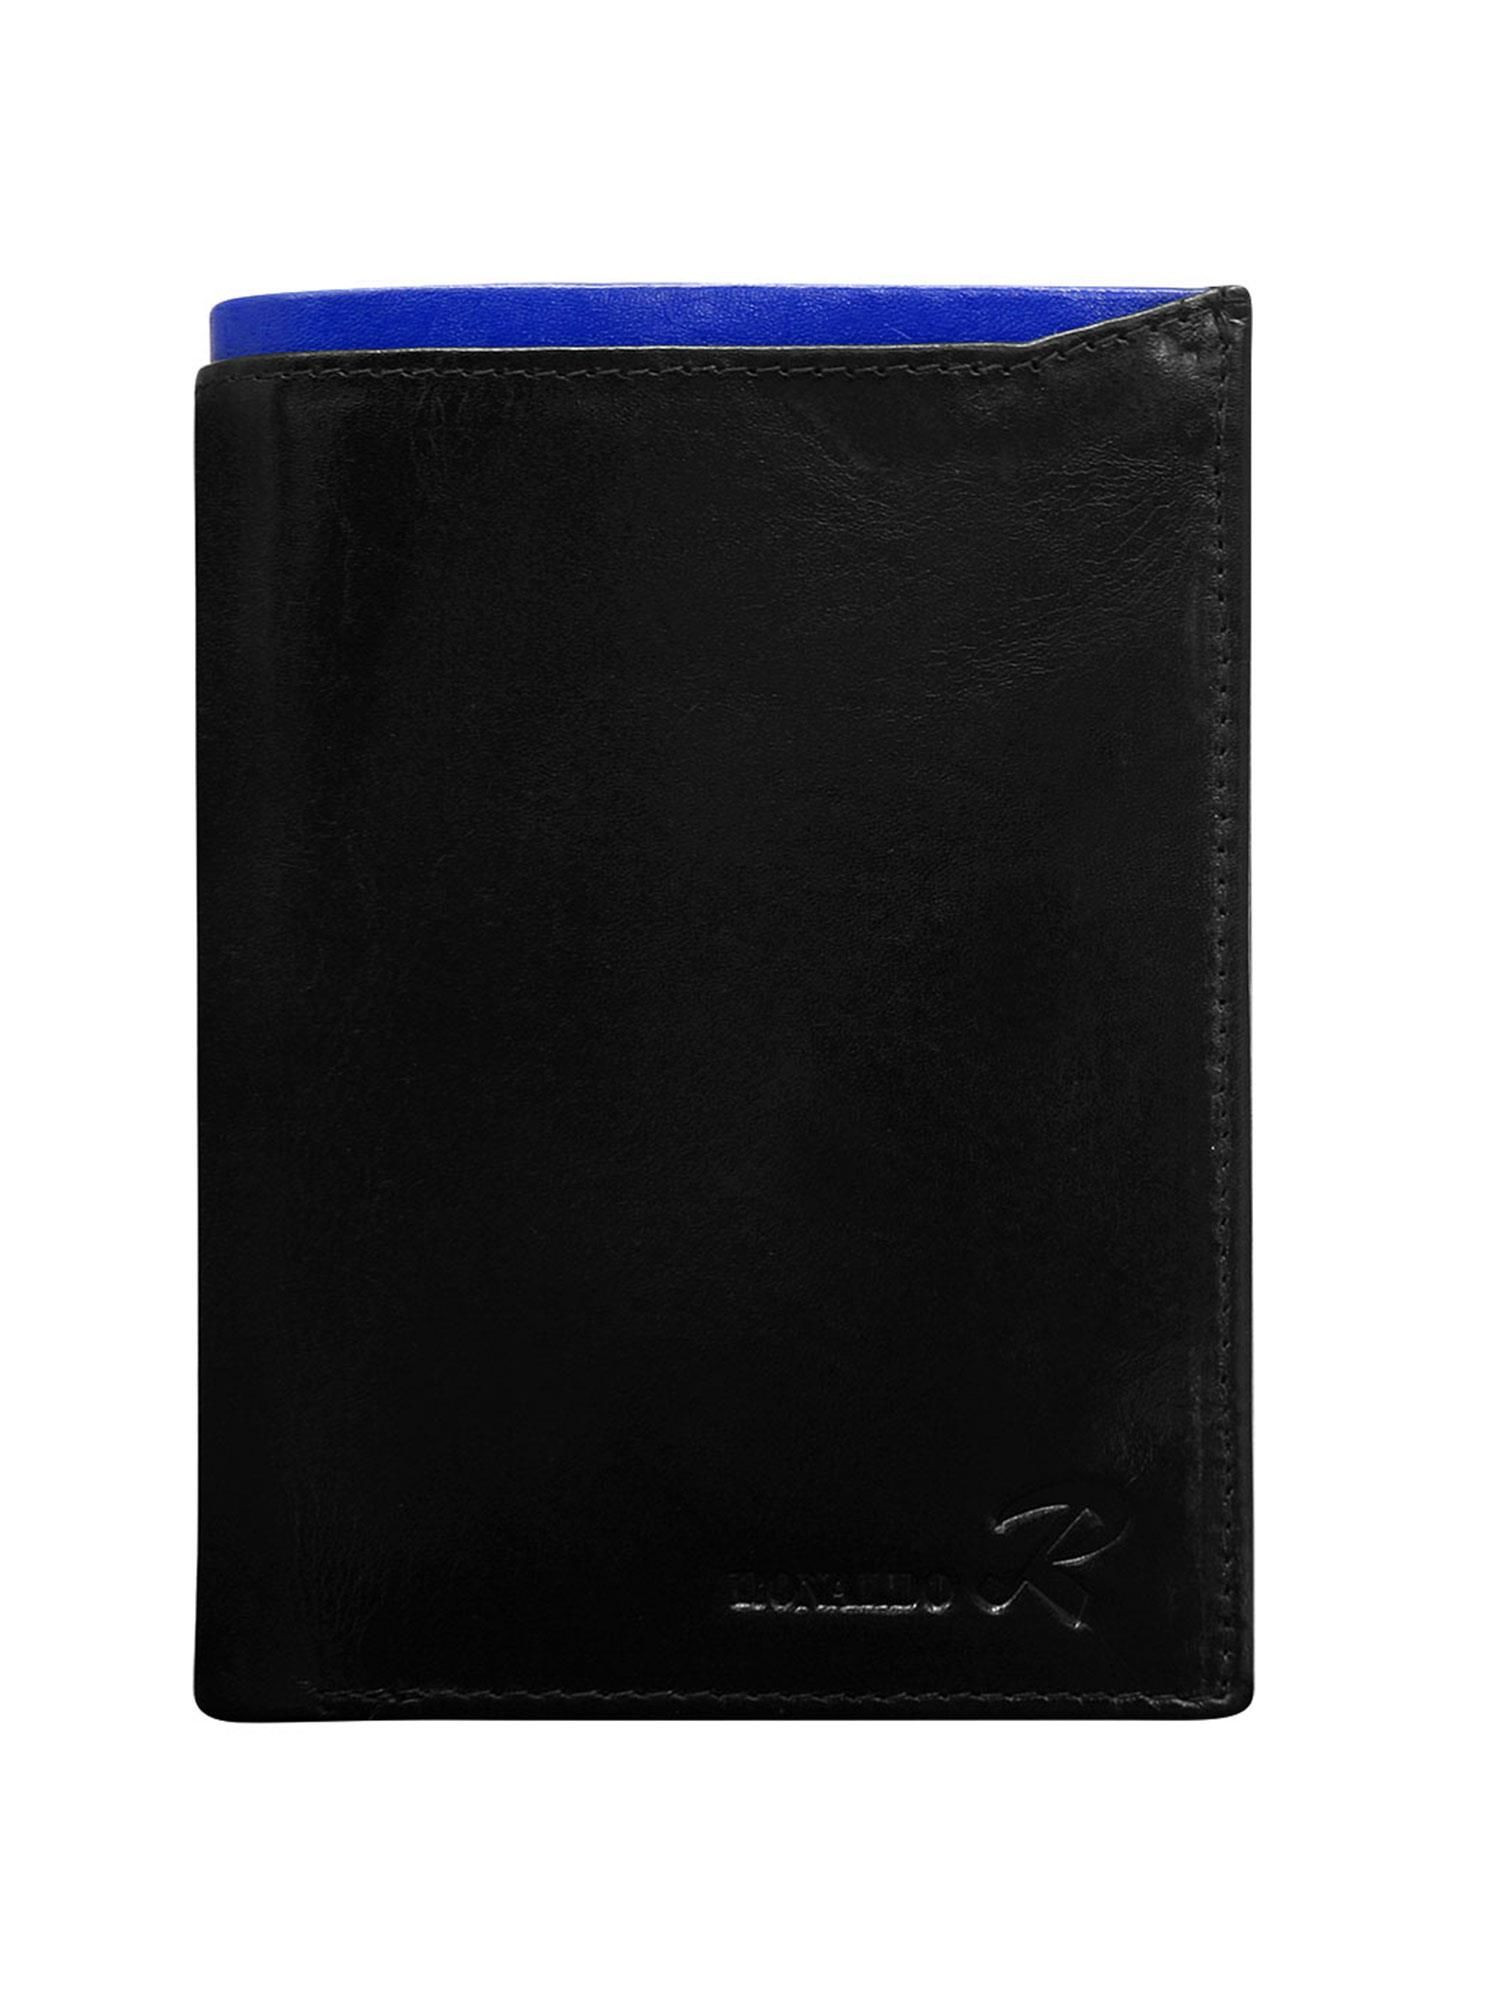 Peněženka CE PR N4 VT.81 černá a modrá jedna velikost